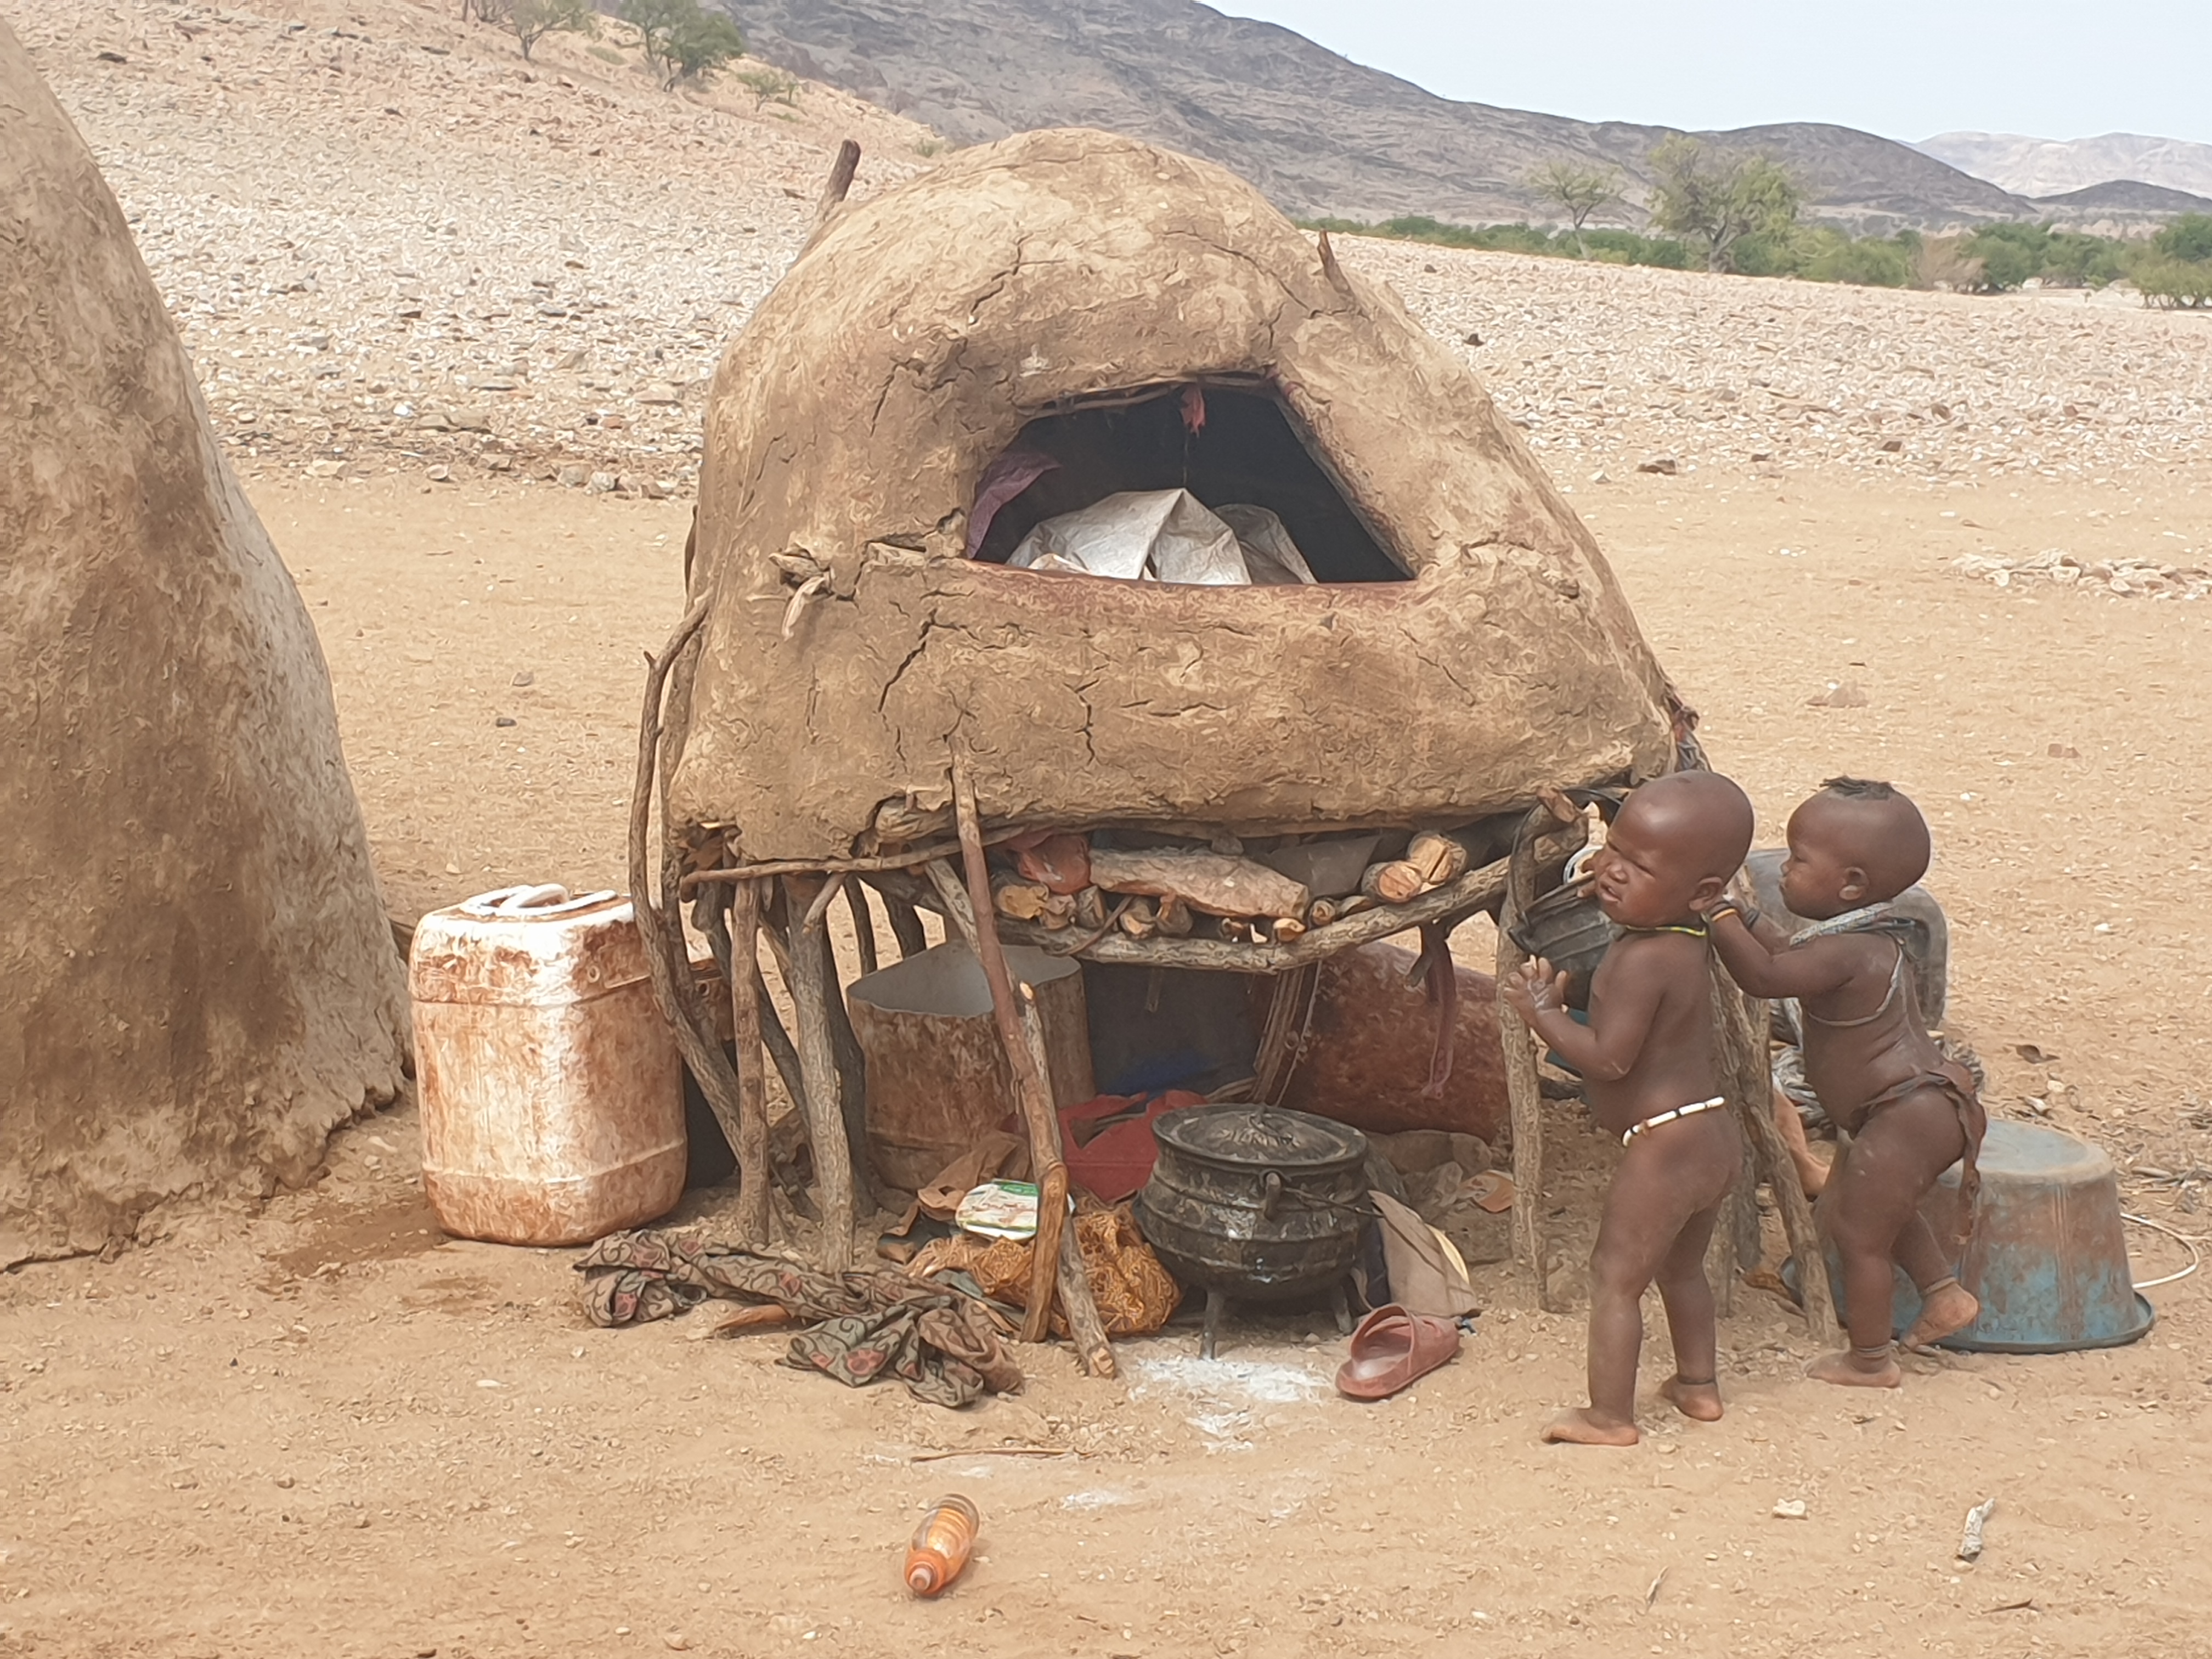 Détails d'une cuisine Himba assaillie par 2 enfants, Désert du Namib, Kaokoland, Province de Kunene, Namibie.